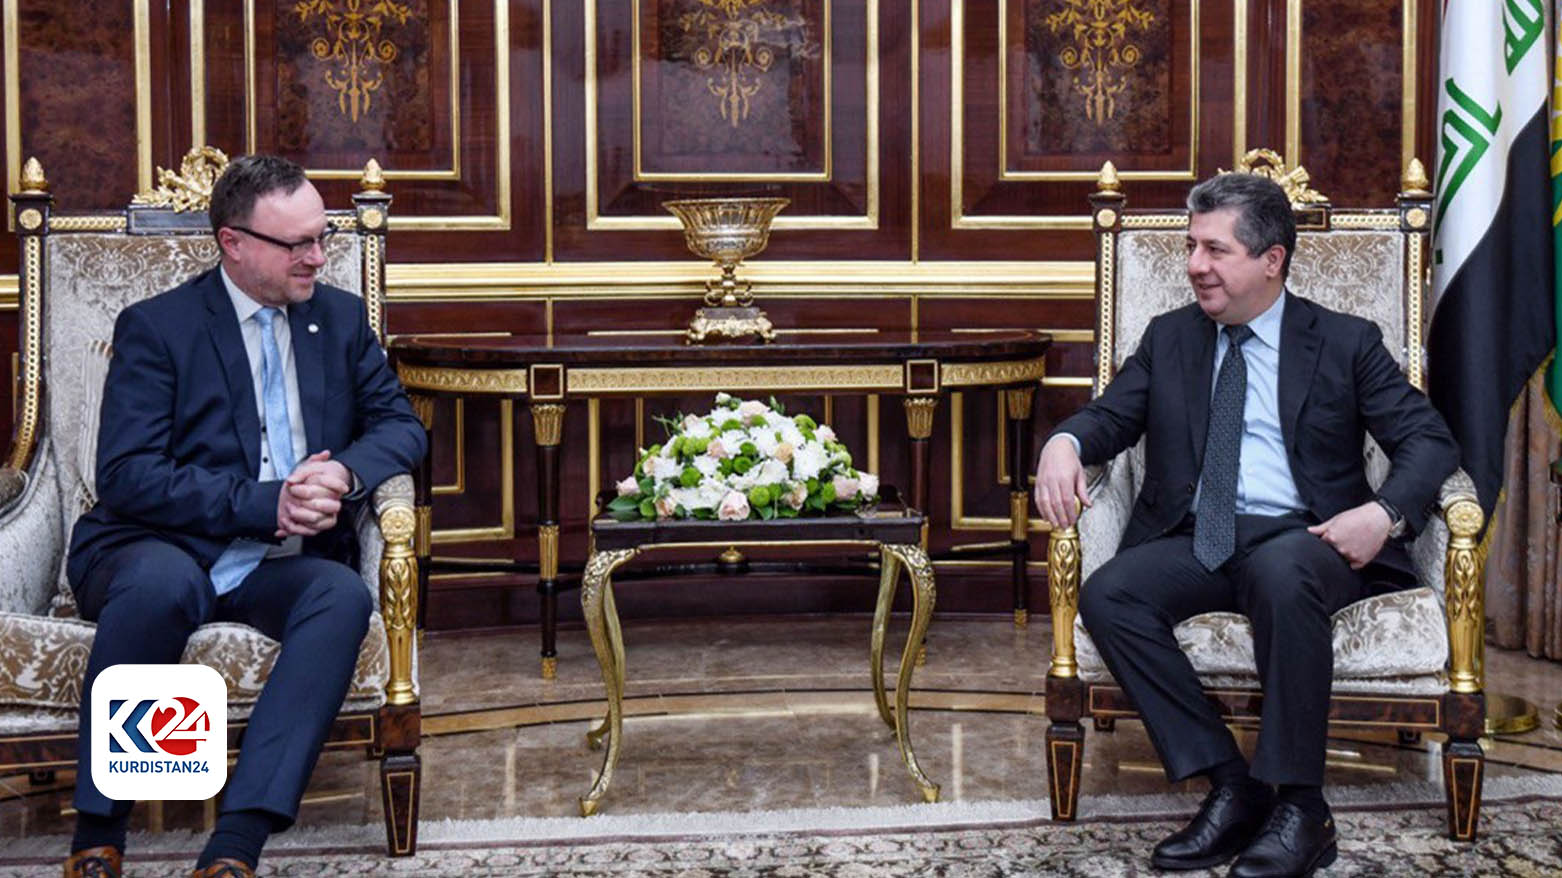 رئيس حكومة إقليم كوردستان مسرور بارزاني ورئيس فريق التحقيق الدولي المعني بجرائم داعش (یونیتاد) كريستيان ريتشر